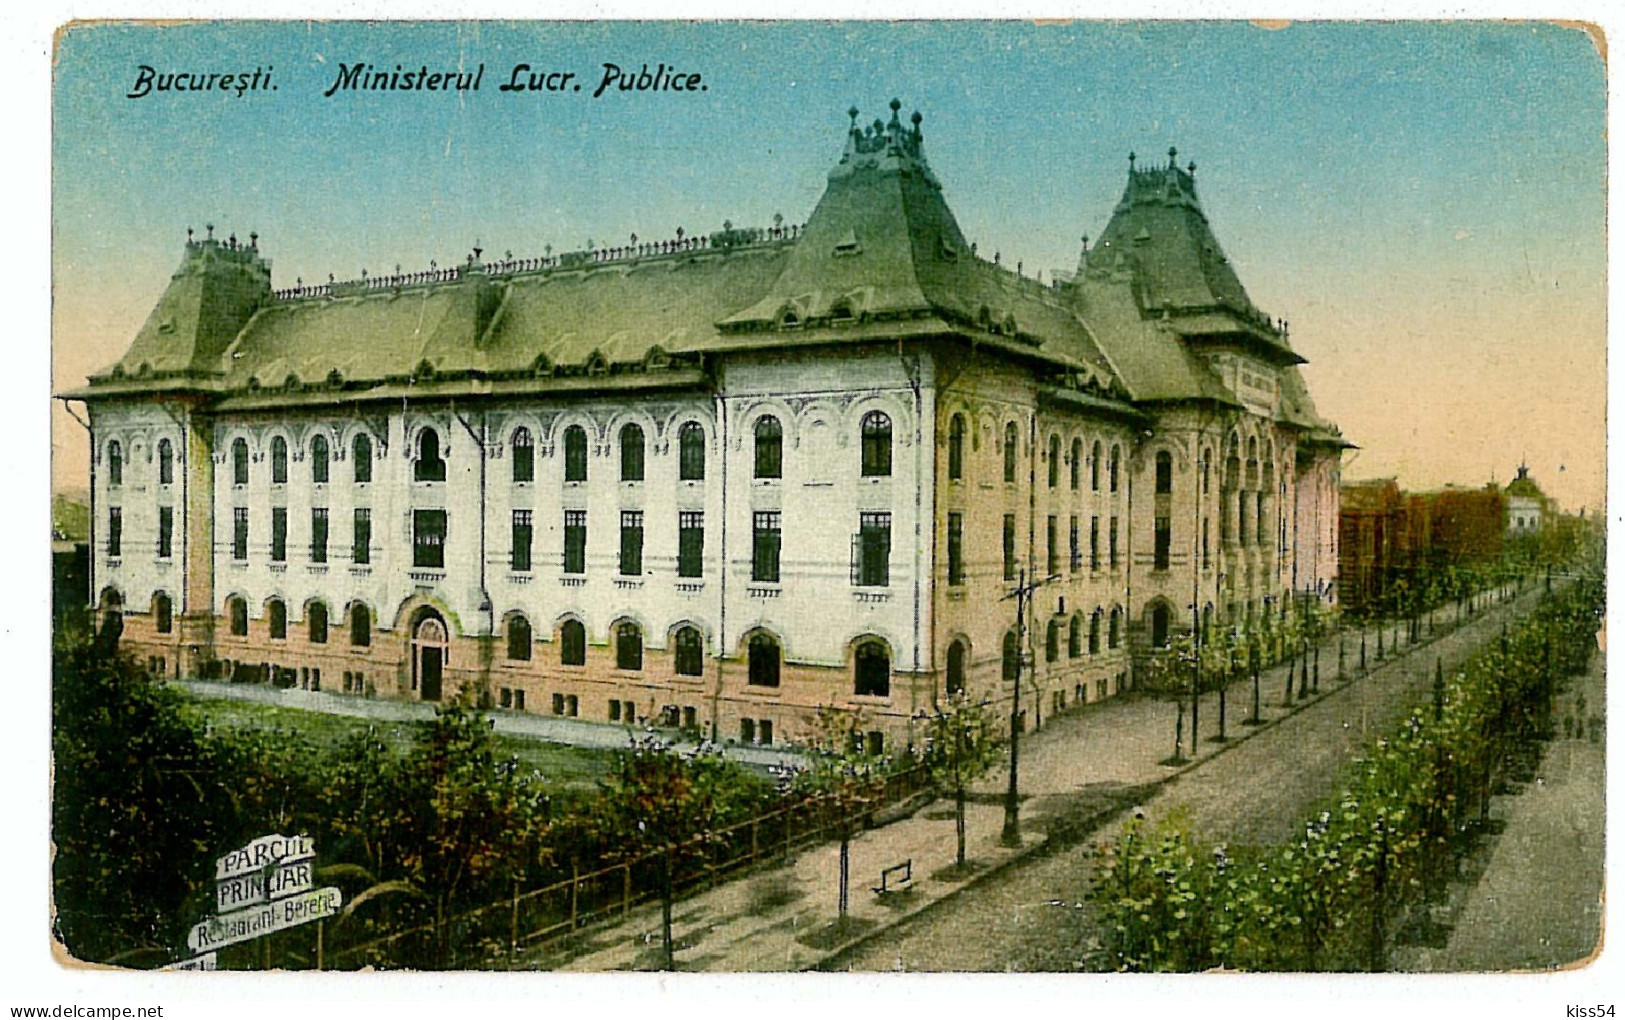 RO 82 - 1311 BUCURESTI, Ministerul Lucrarilor Publice, Romania - Old Postcard - Unused - Romania